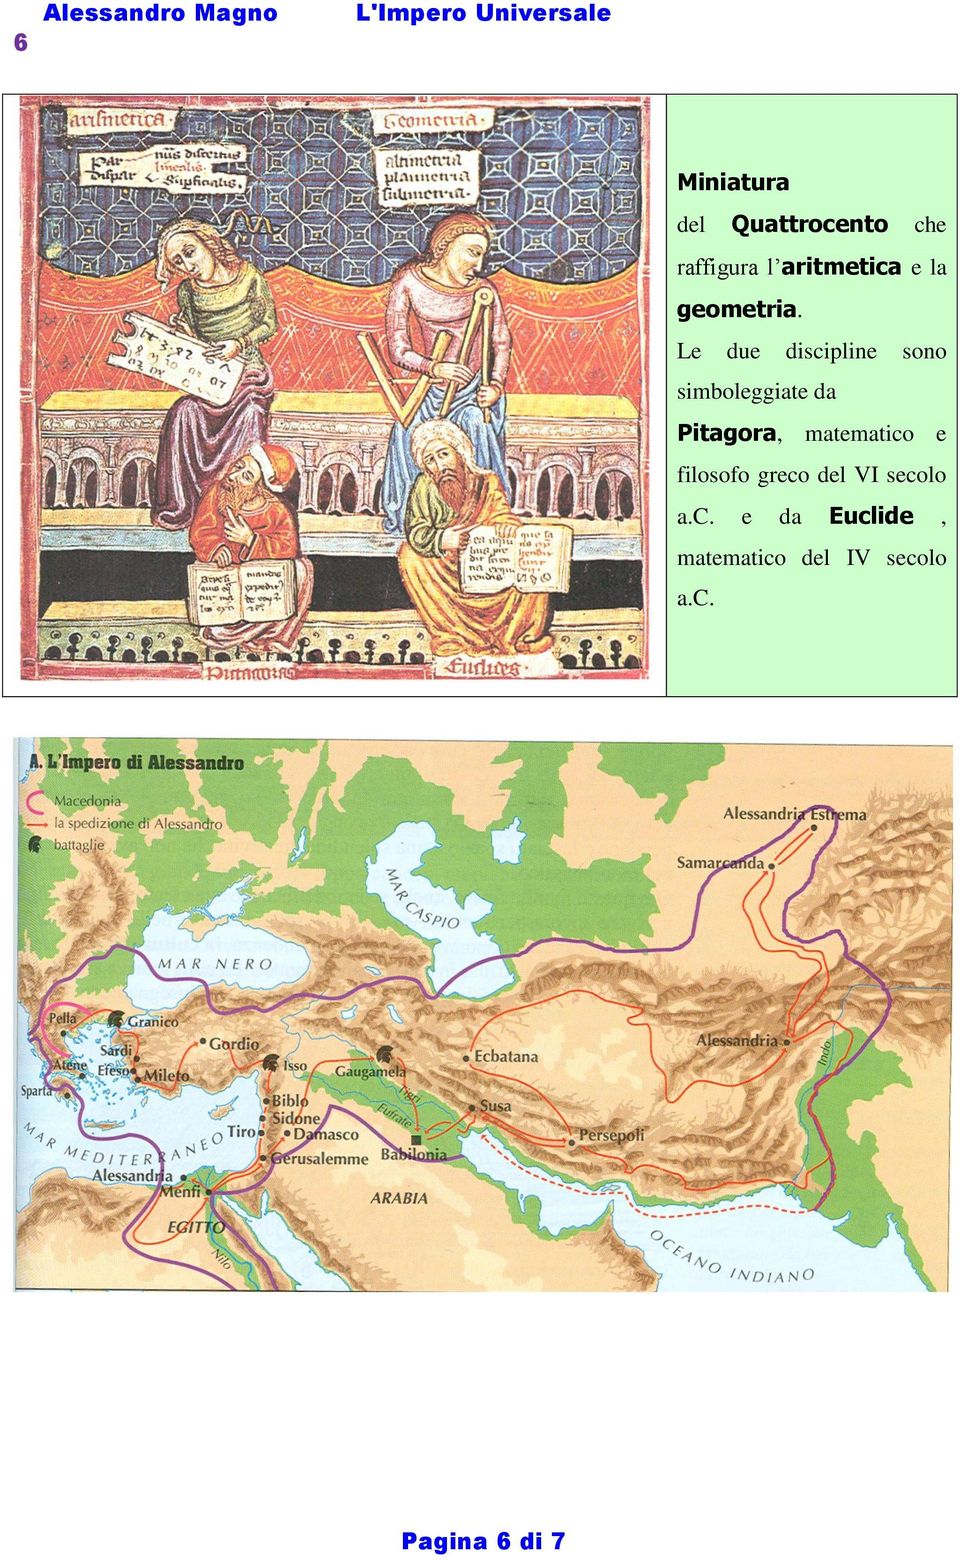 Alessandro Magno E La Civilta Ellenistica Ovvero Dalla Macedonia All Impero Universale Pdf Download Gratuito